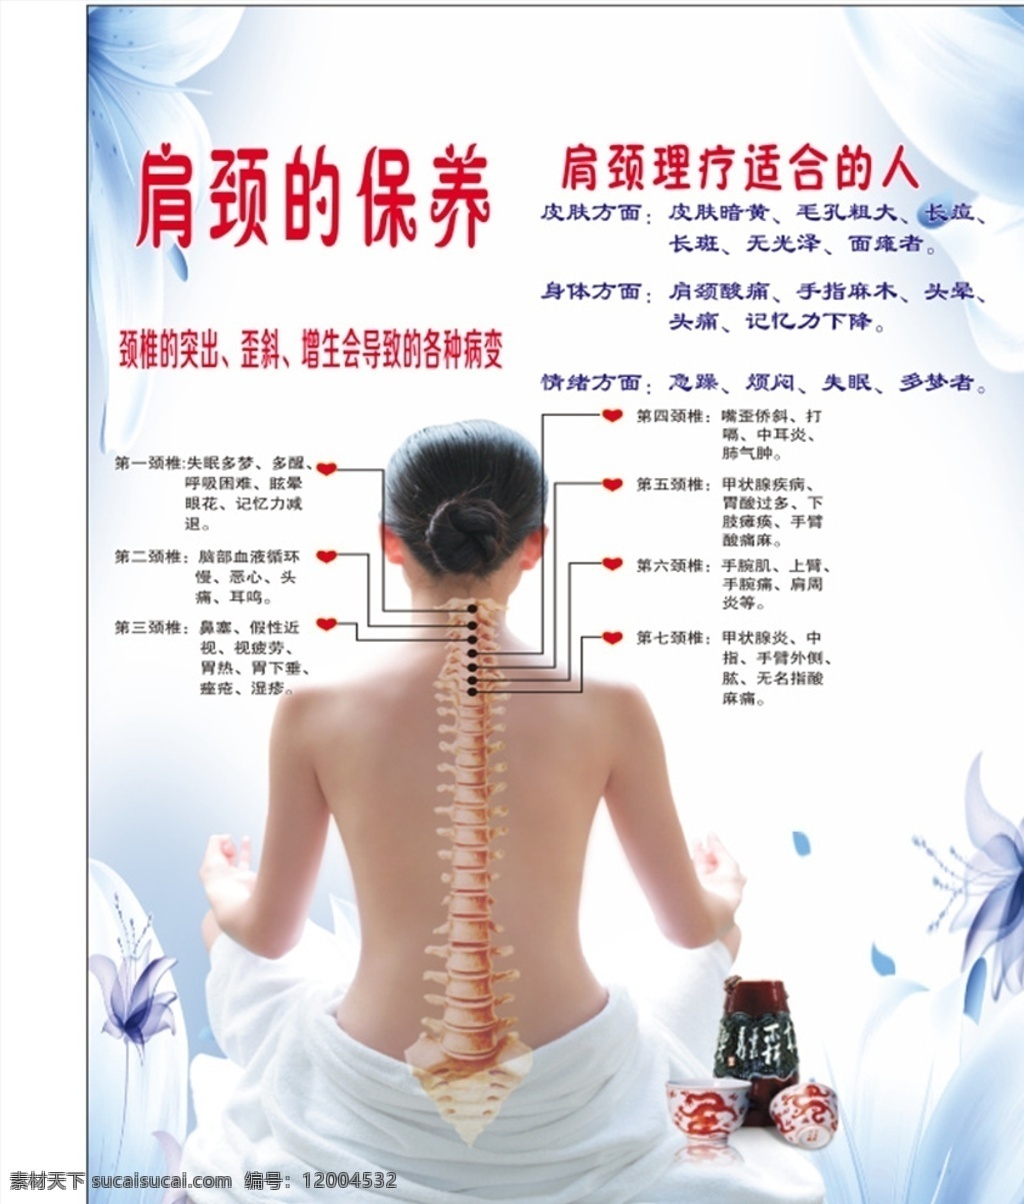 肩颈保养图片 肩颈保养海报 肩颈保养 海报 肩颈 保养海报 室外广告设计